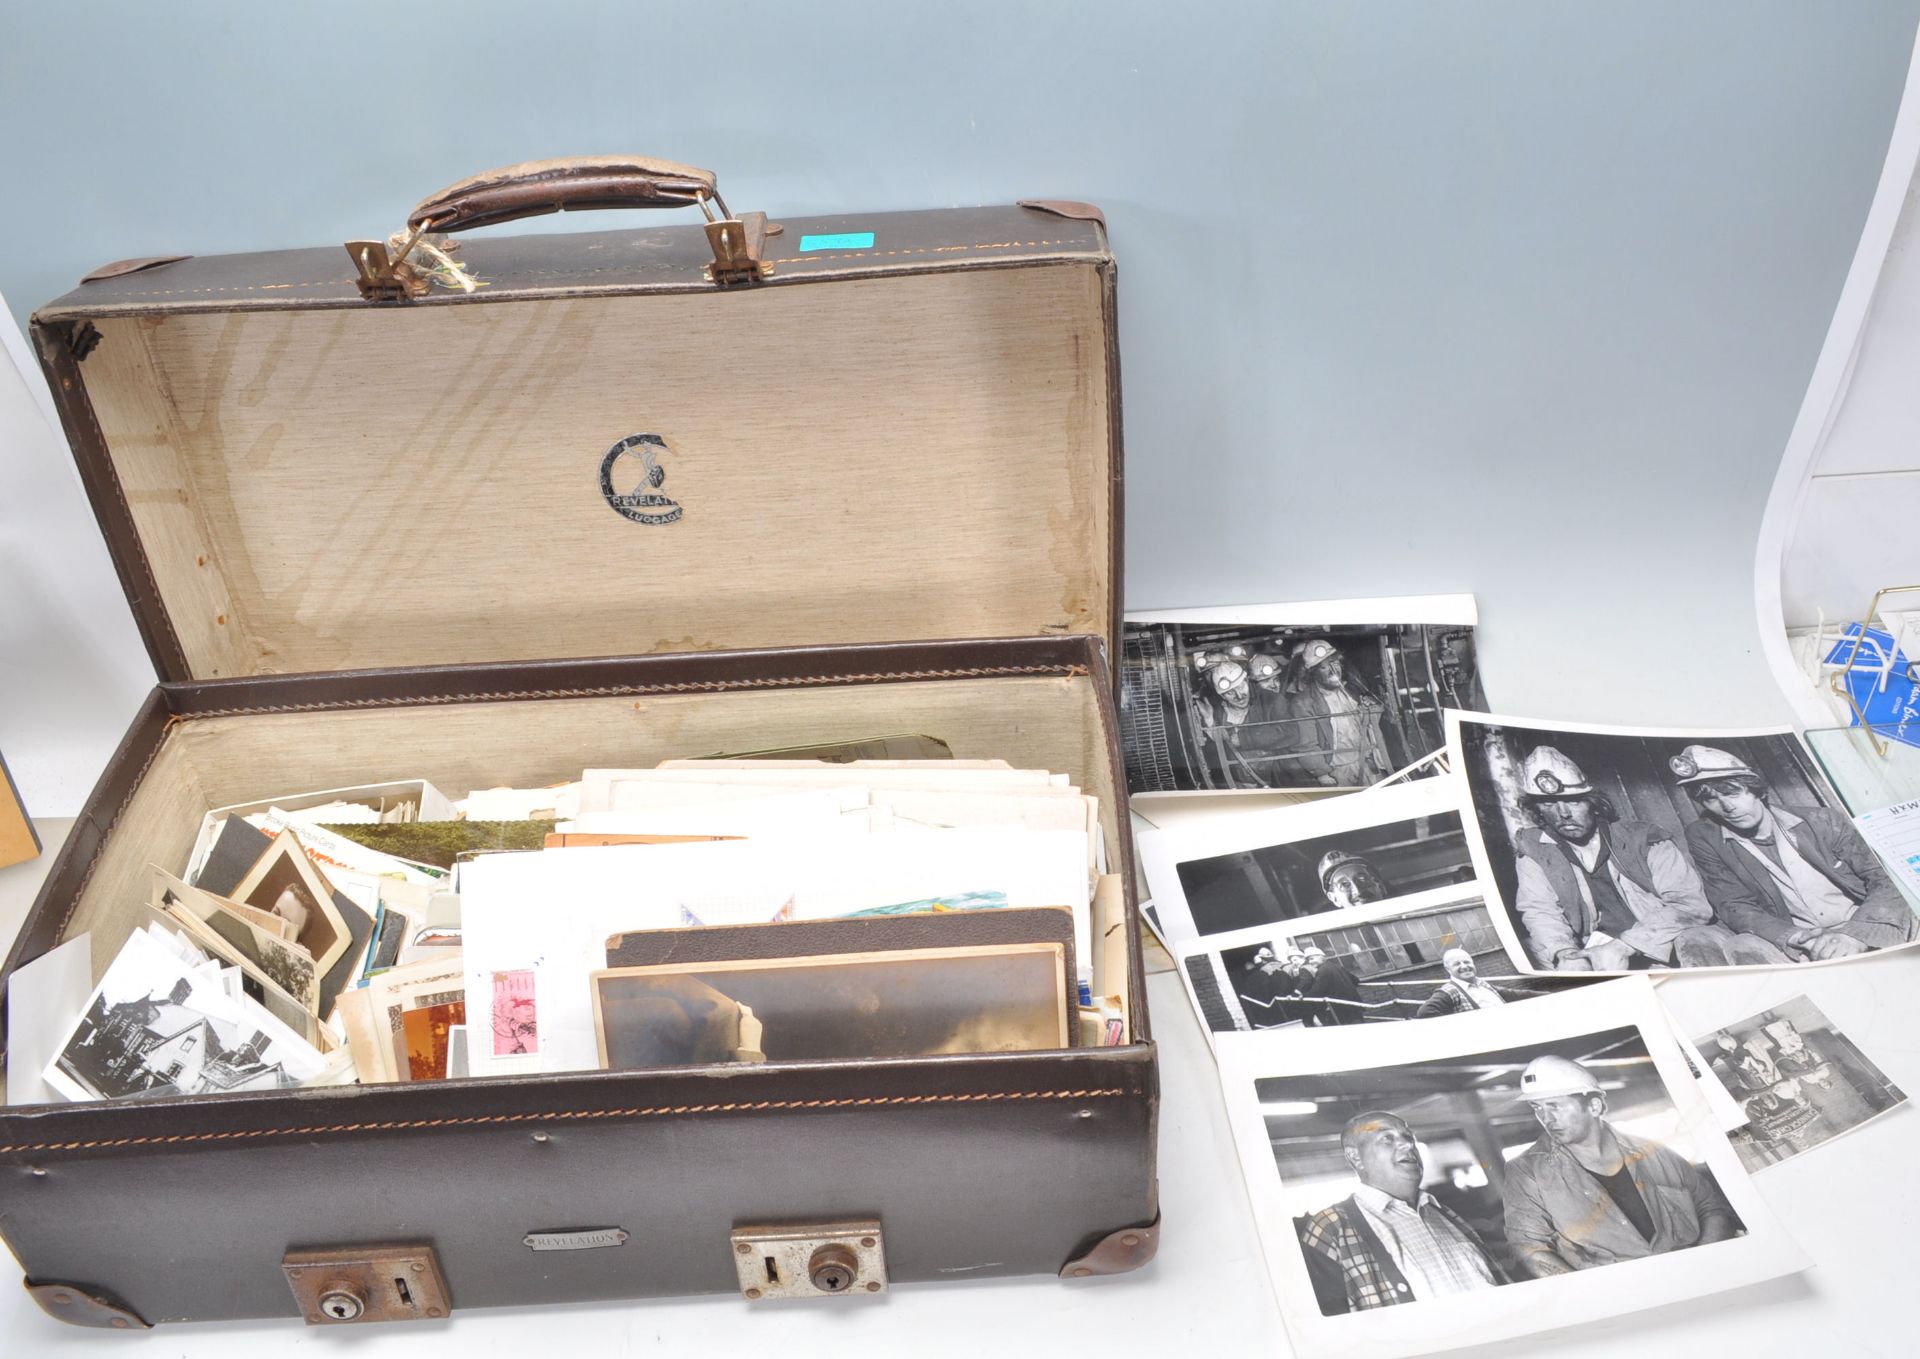 Vintage Revelation suitcase with attic clearance of old ephemera & photos (inc large images of